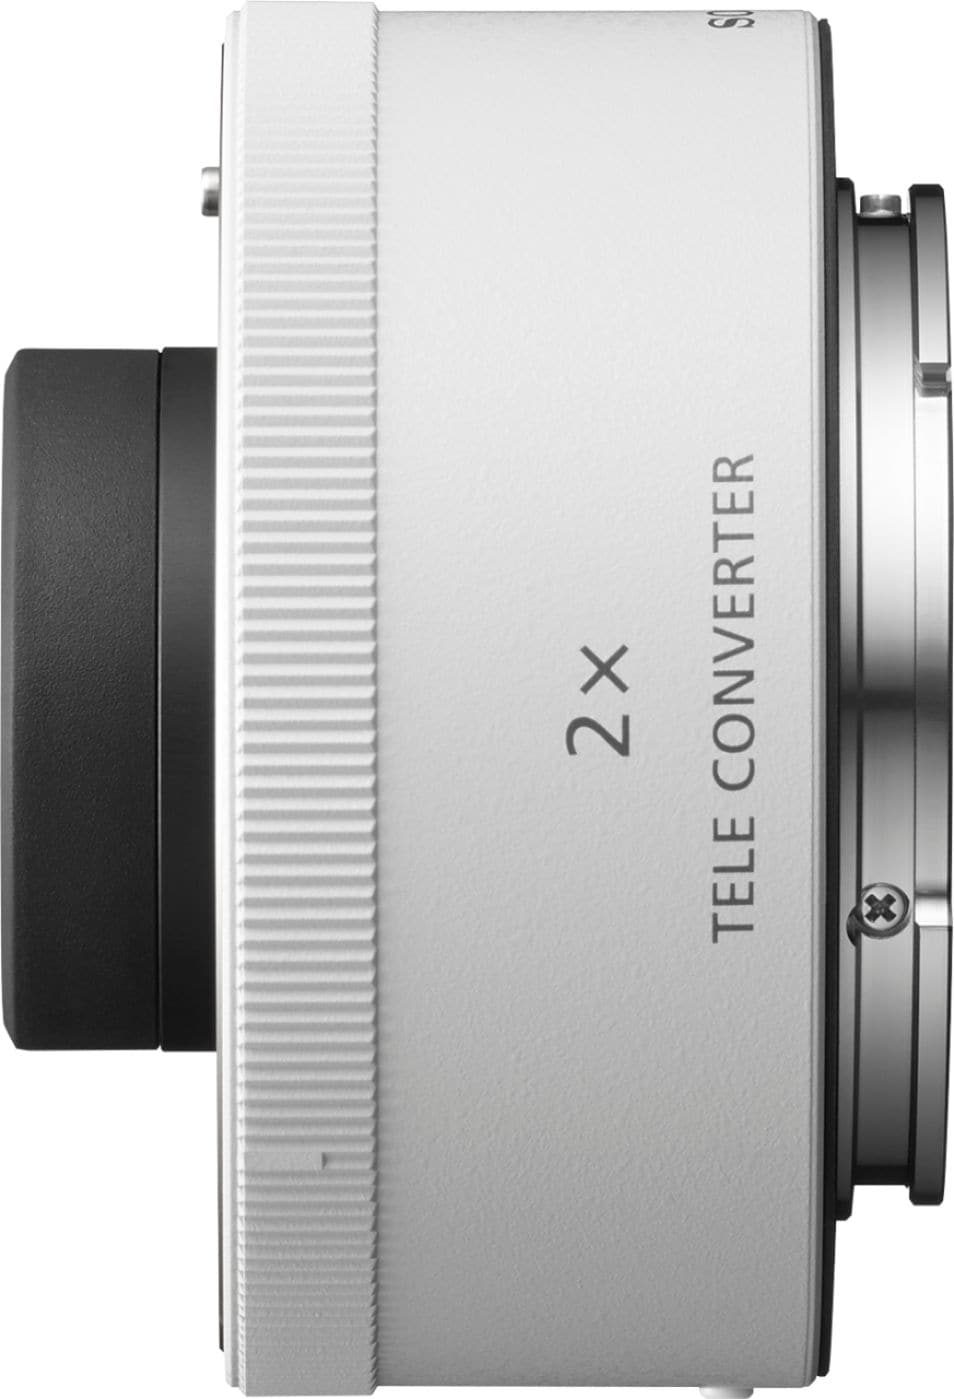 Sony - 2.0x Teleconverter Lens for Select Lenses - White_1